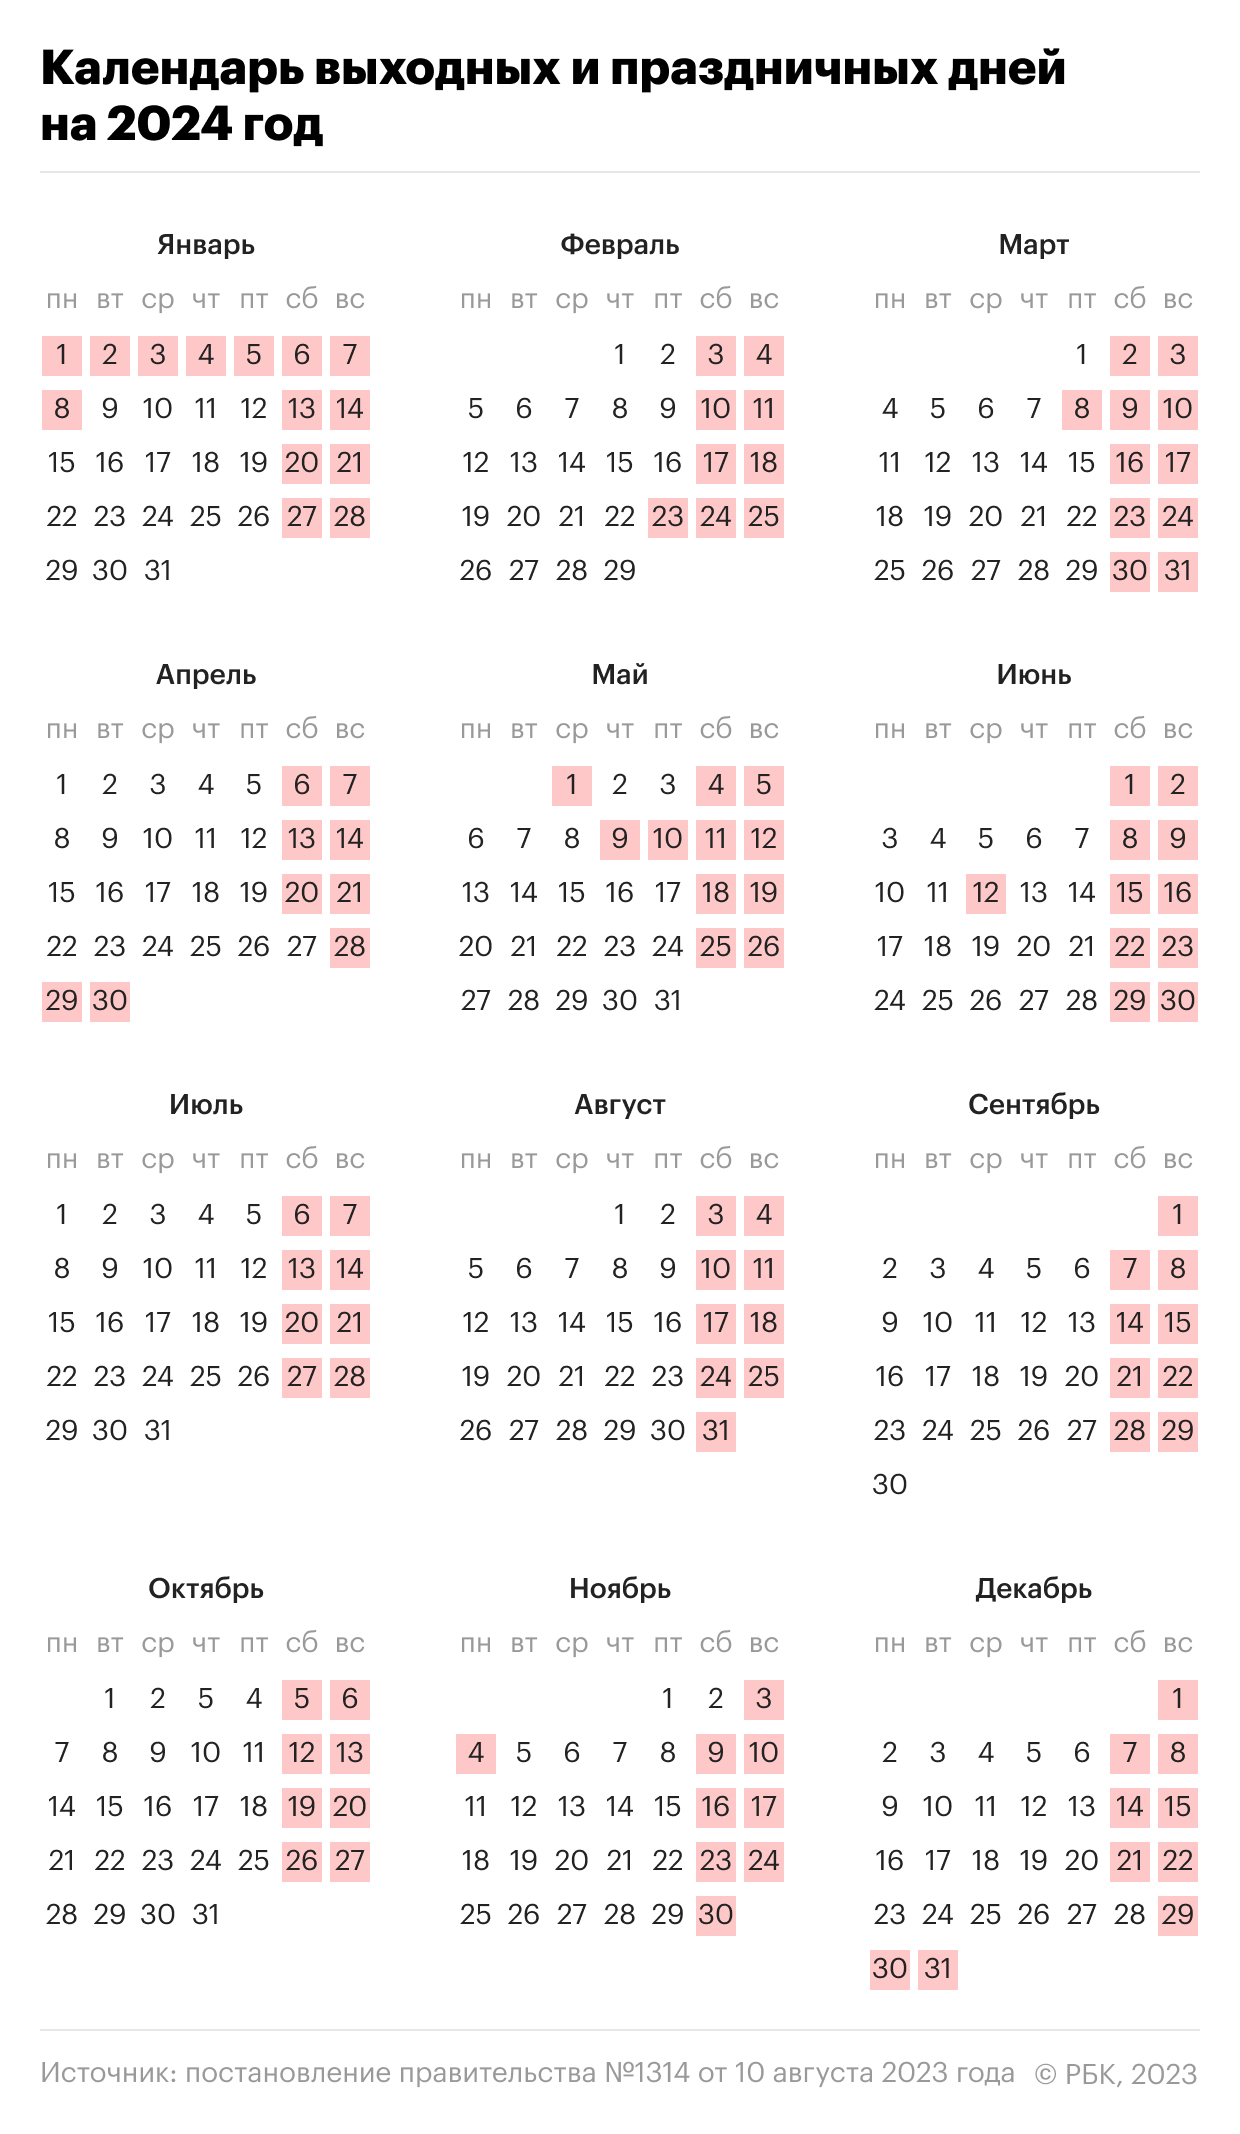 Календарь выходных и праздничных дней на 2024 год на основе постановления